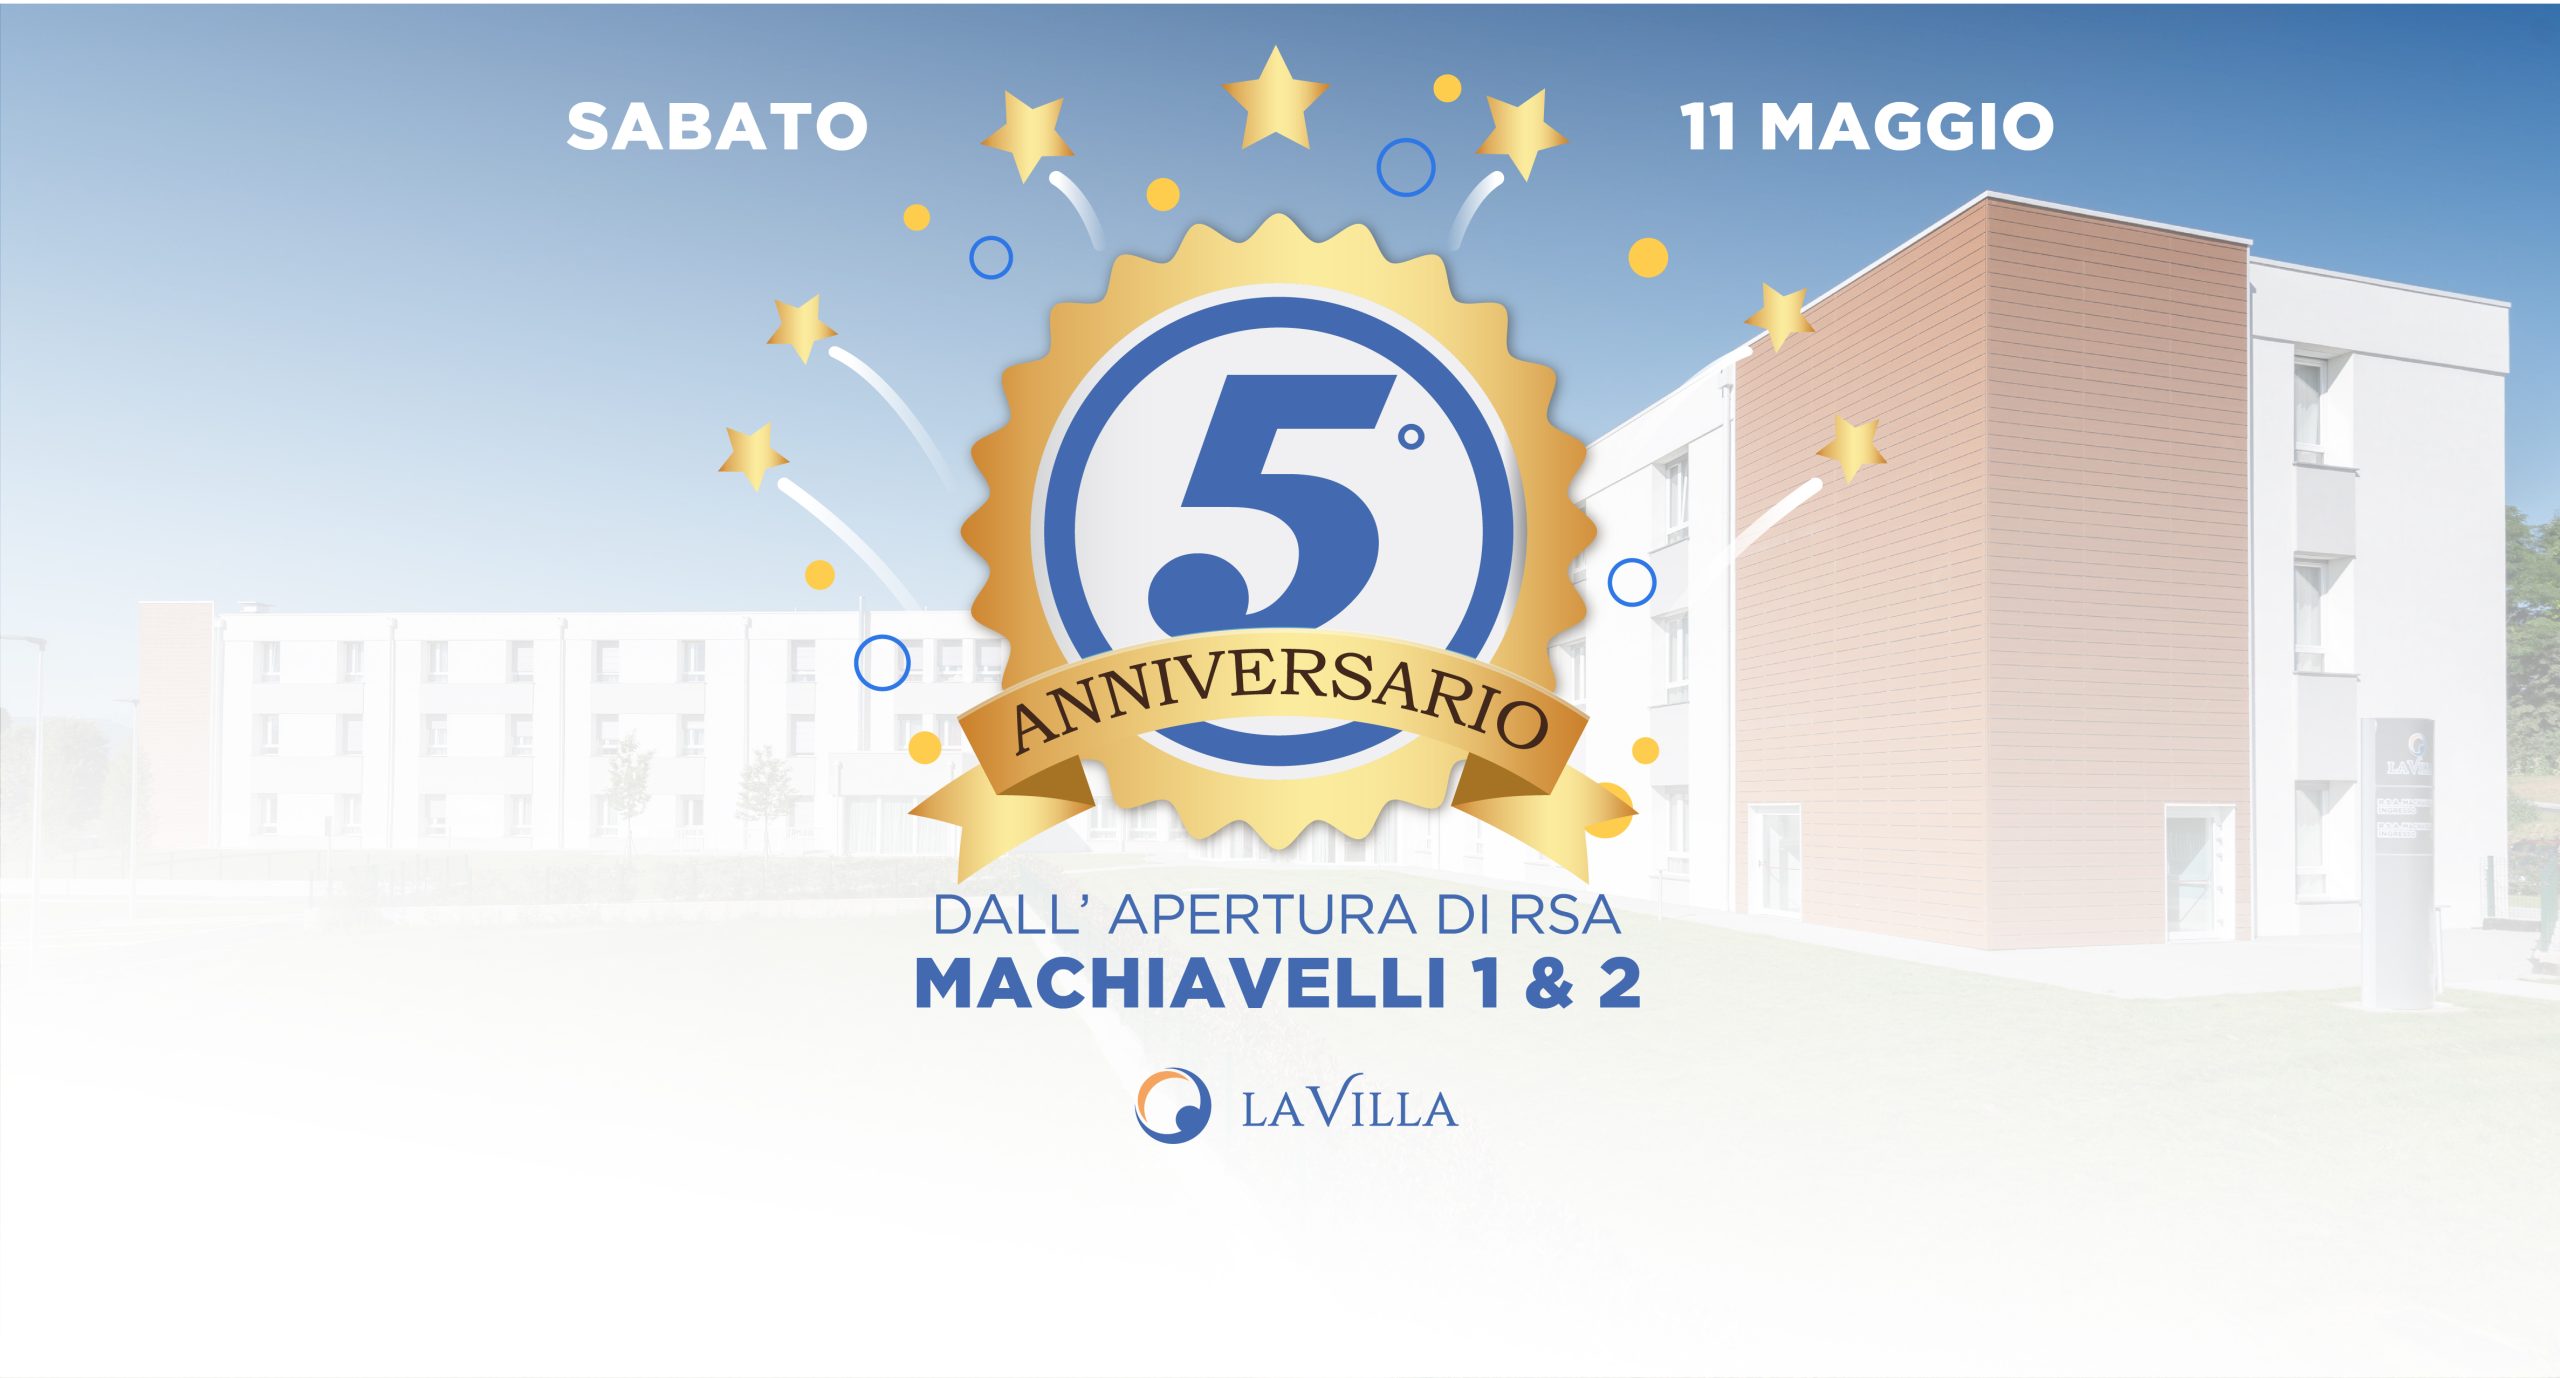 Festa in occasione del 5° anniversario dall’apertura di RSA Machiavelli 1 & 2